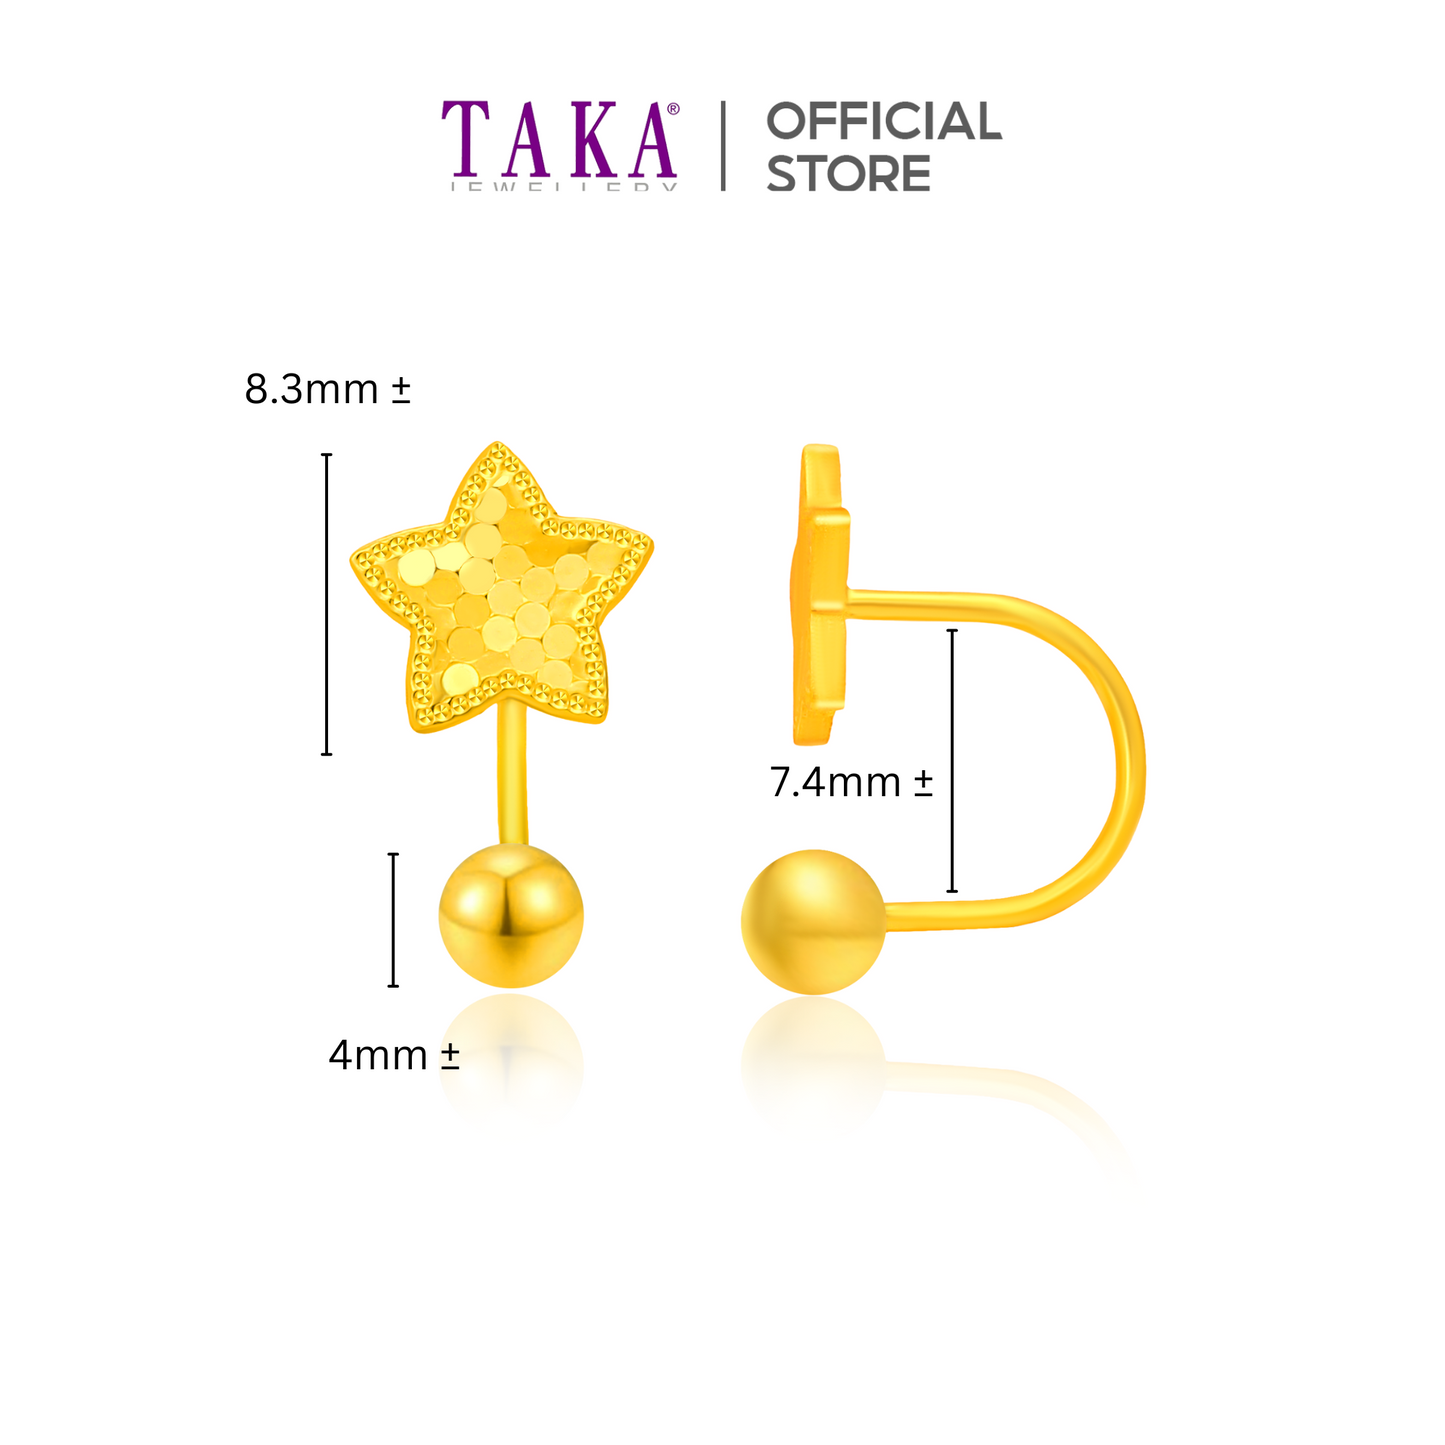 TAKA Jewellery 999 Pure Gold 5G Earrings Star